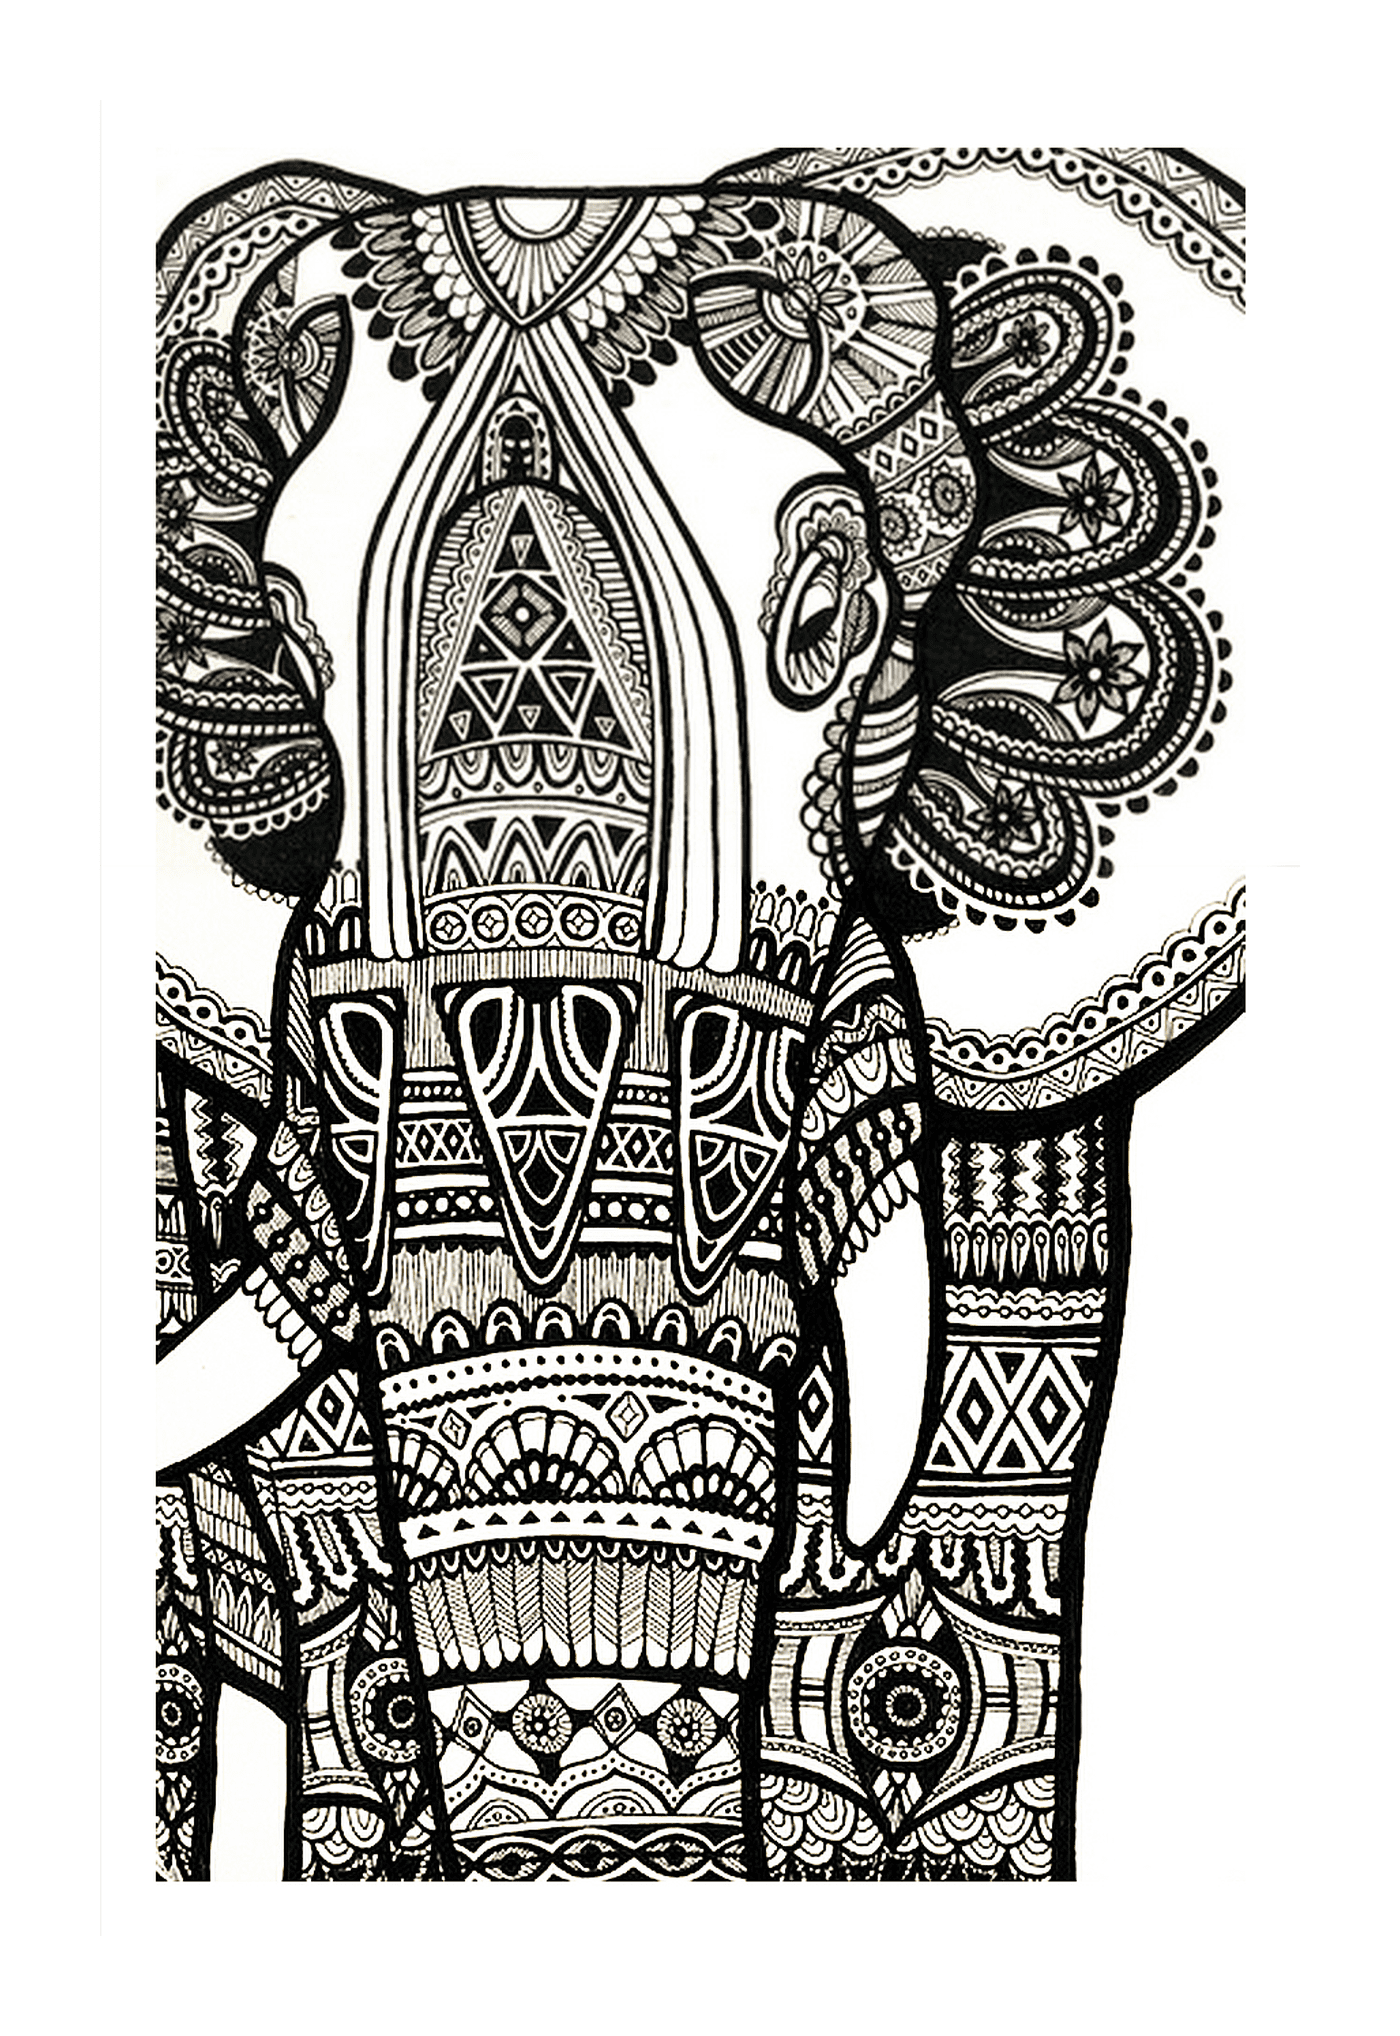  Eine komplexe Zeichnung mit einem indischen Elefanten 